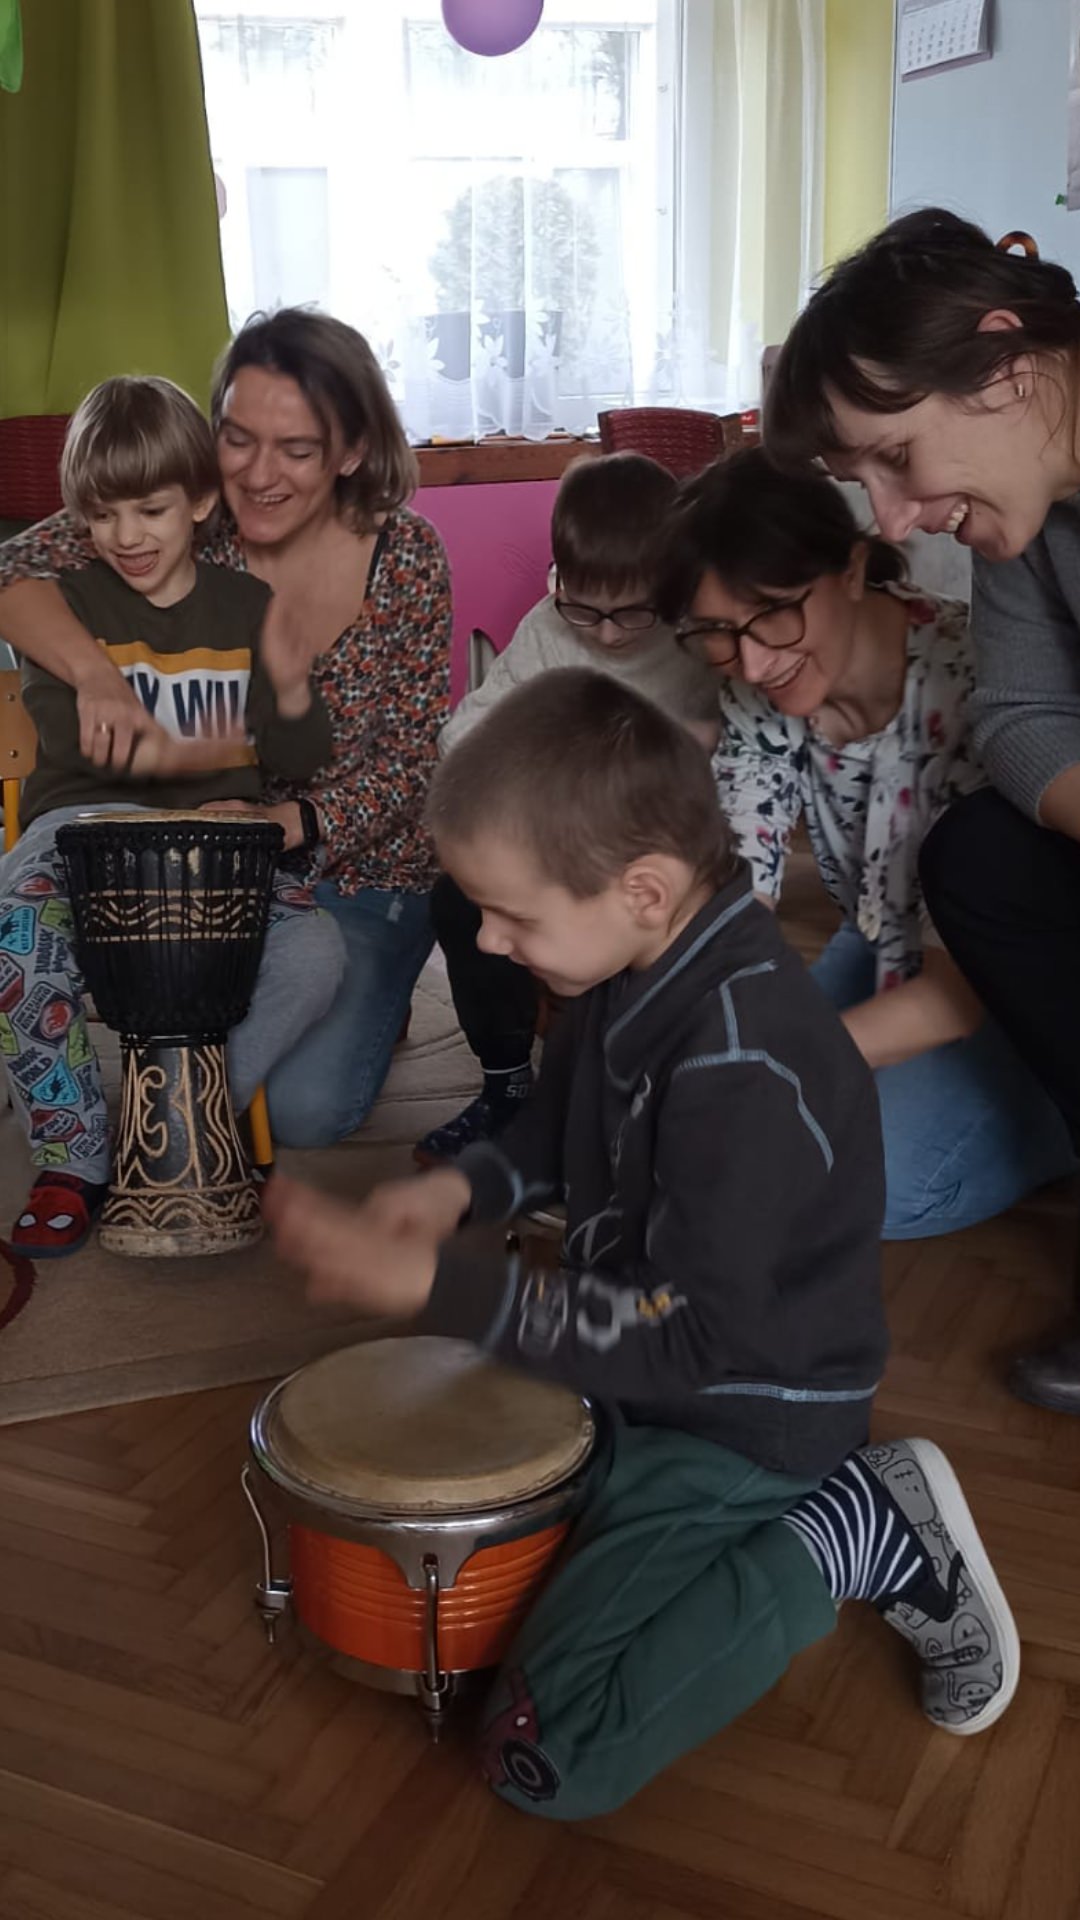 Dzieci grają na bębnach, a dorośli z uśmiechami obserwują dzieci